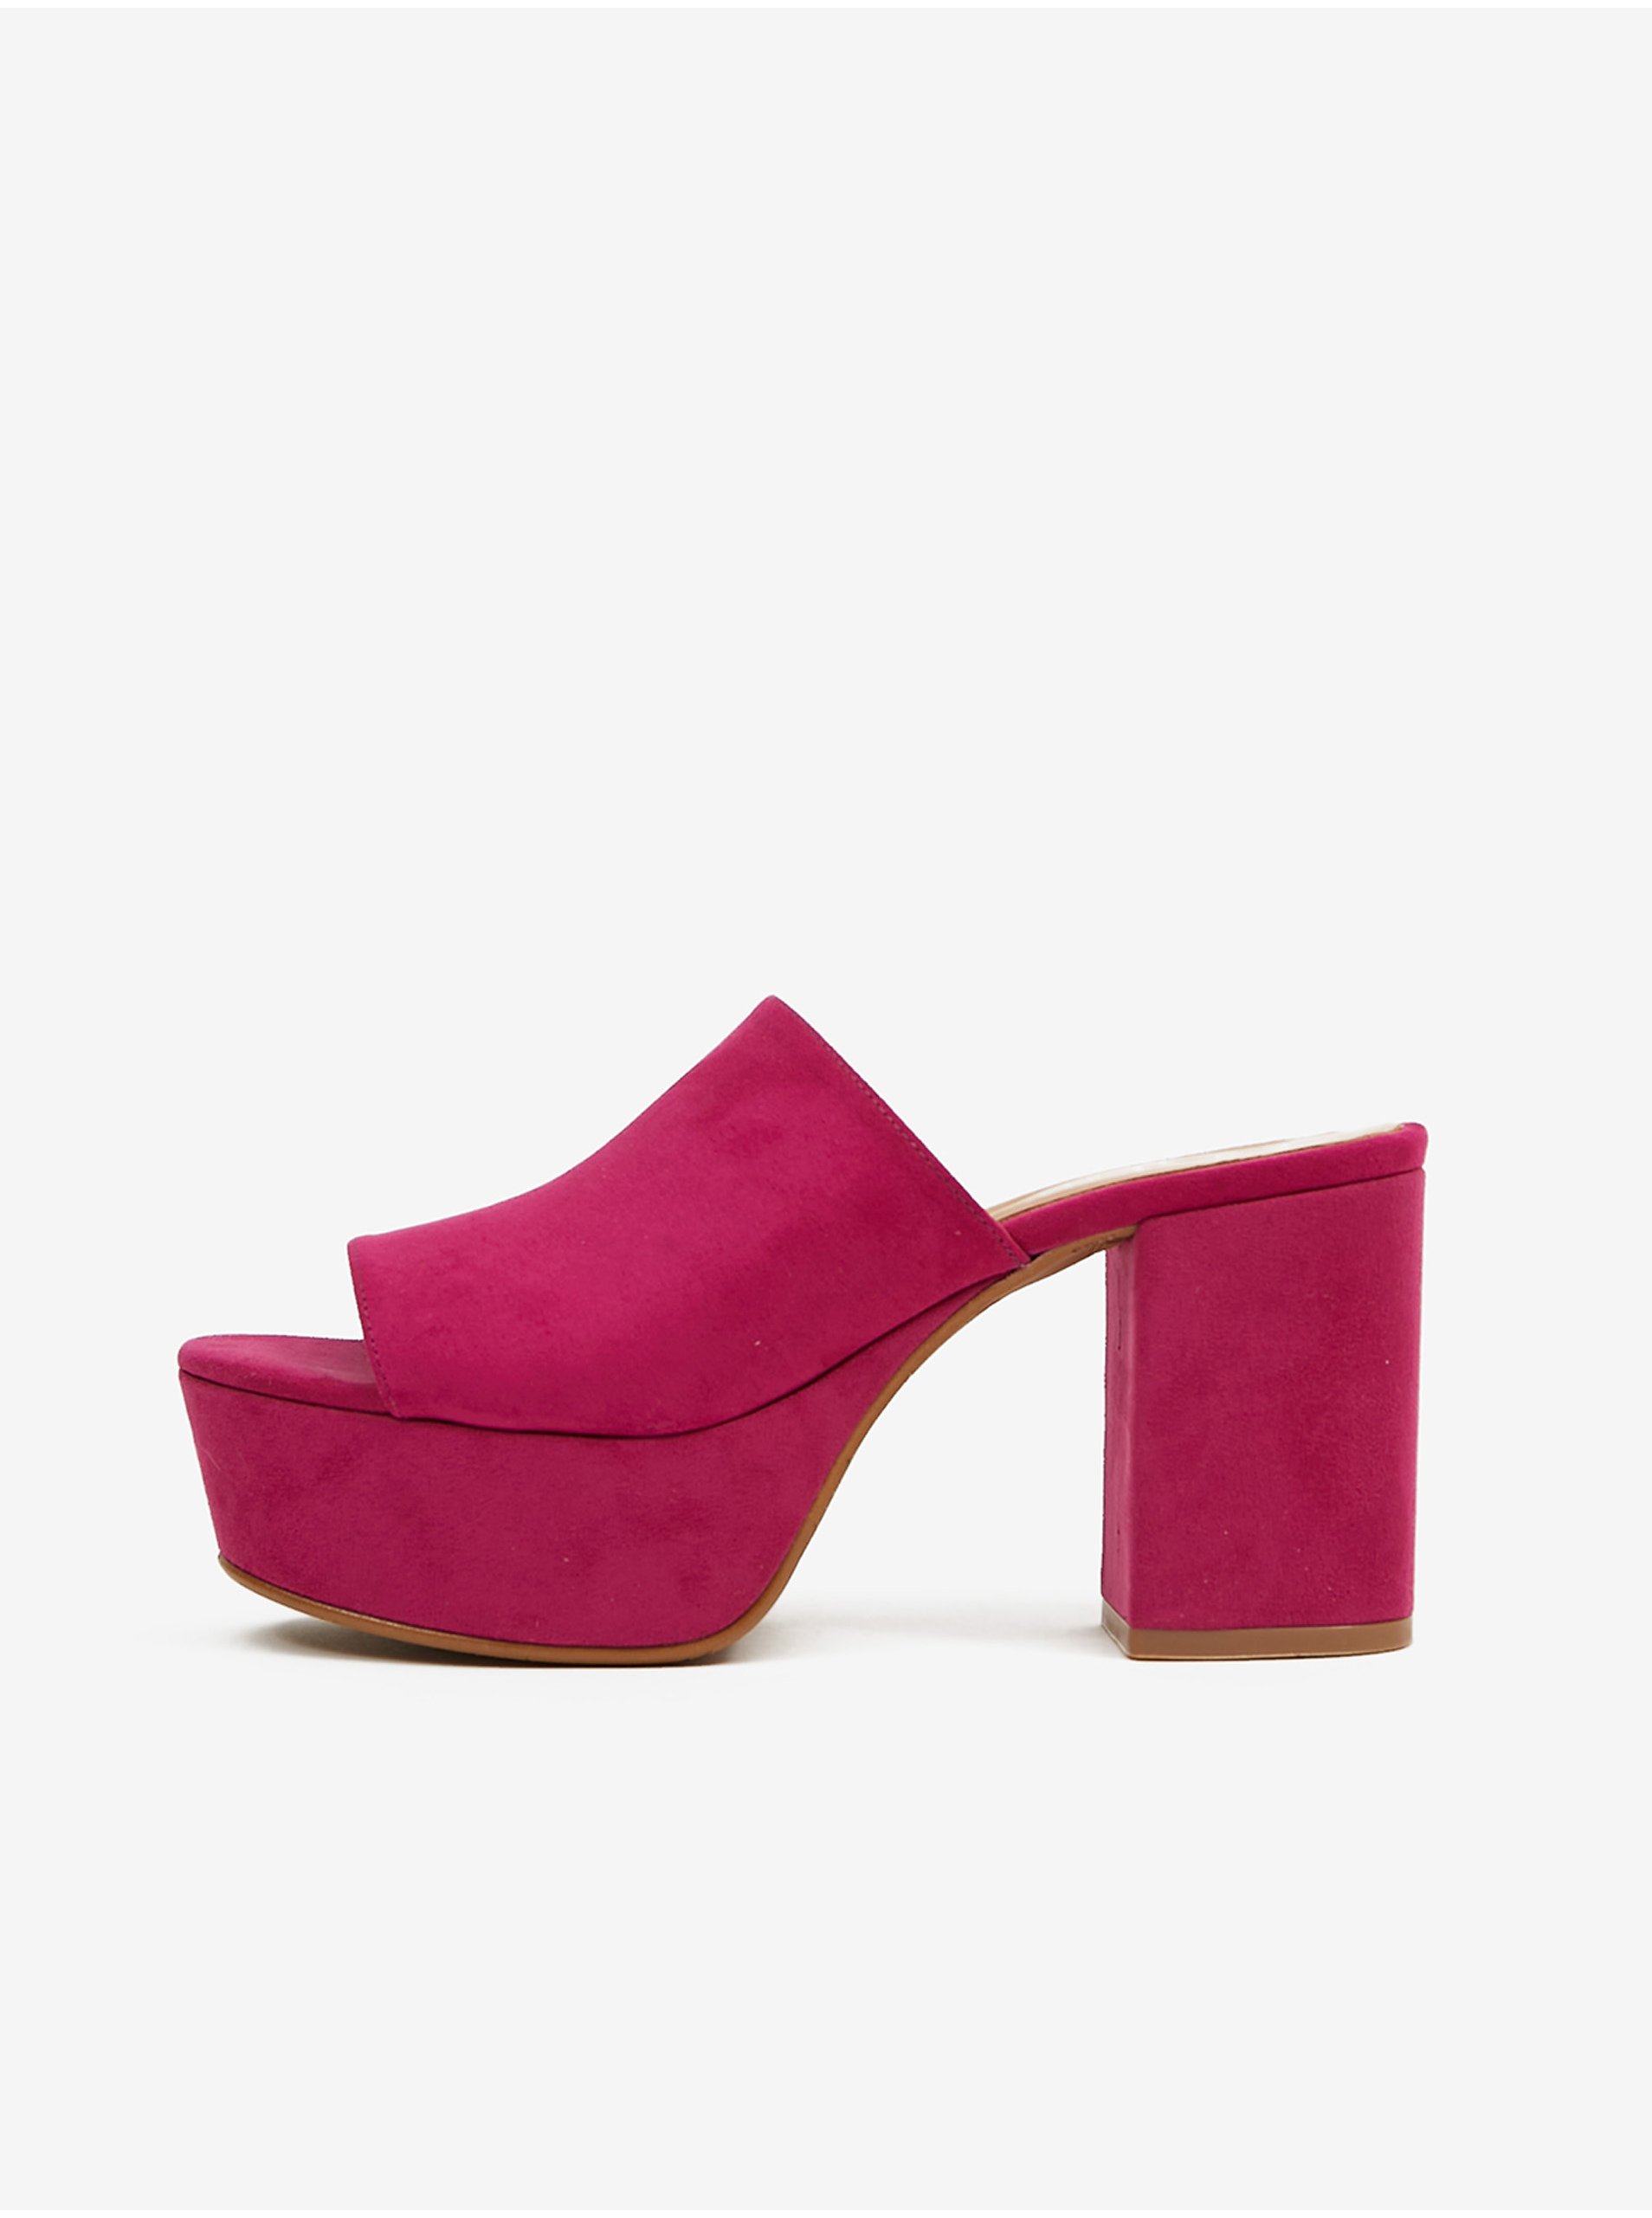 E-shop Tmavě růžové dámské pantofle v semišové úpravě na podpatku OJJU